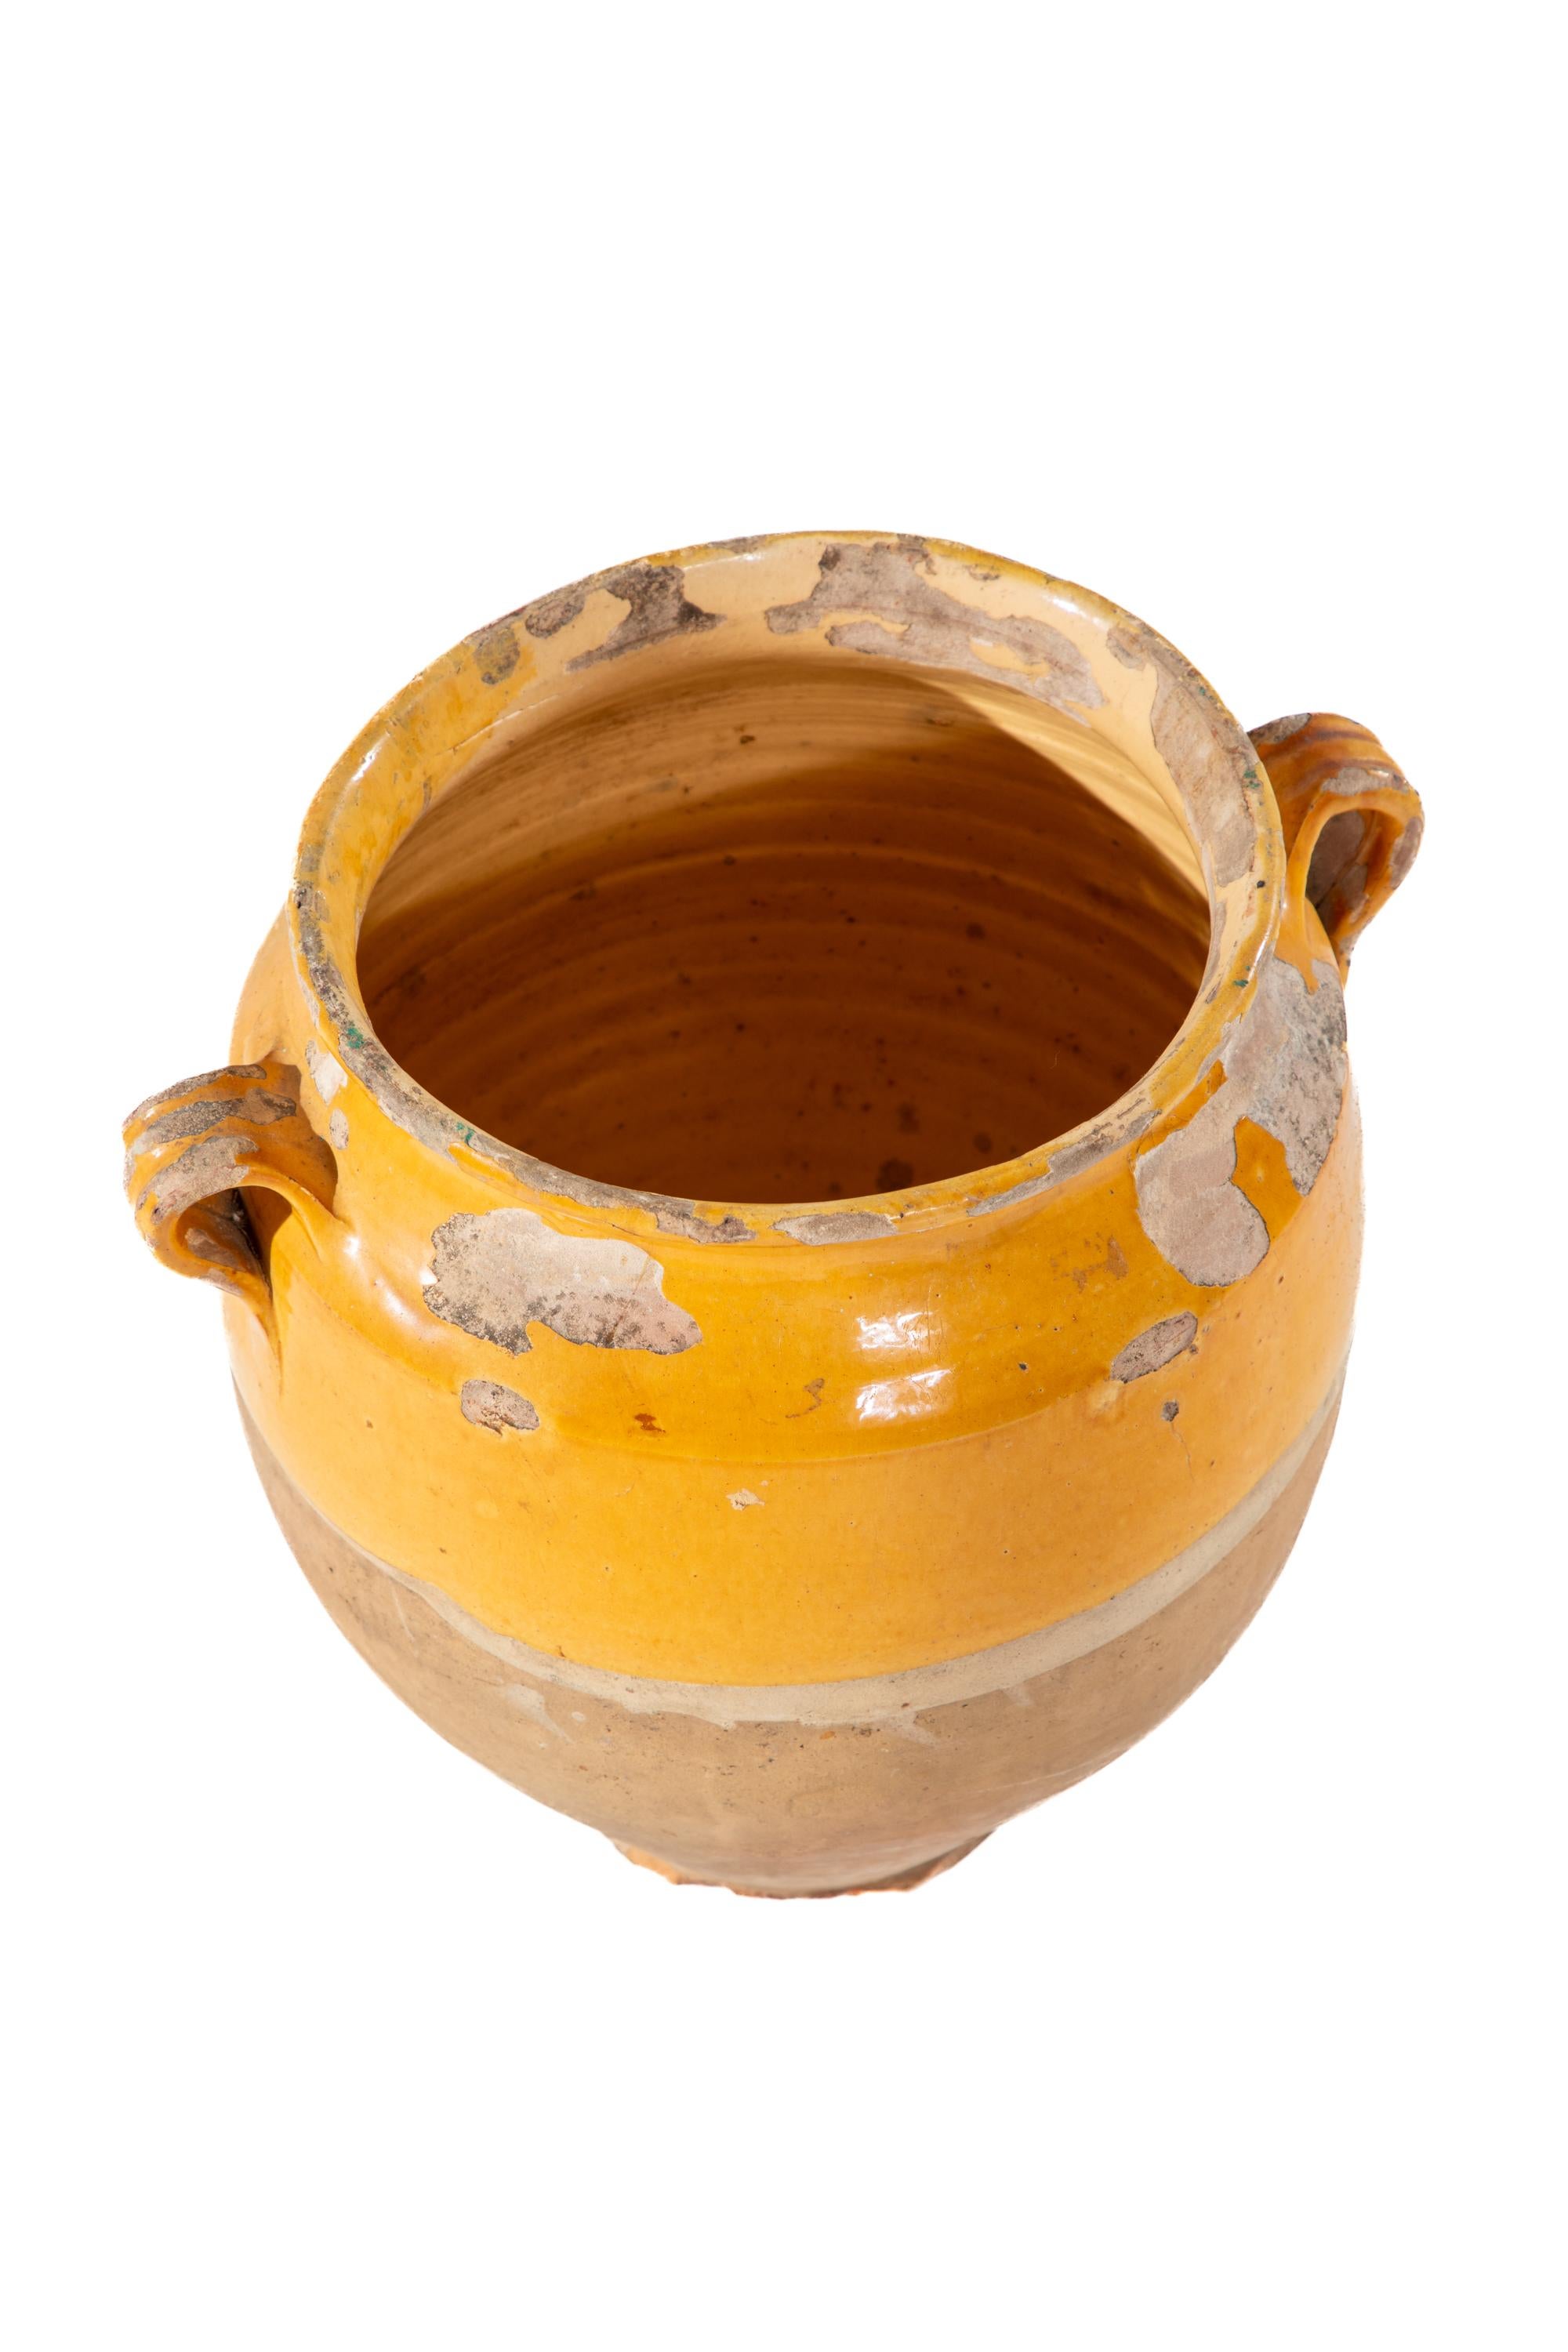 Vase à deux anses en terre cuite.  Partie supérieure émaillée jaune et partie inférieure non émaillée.
Non marqué.